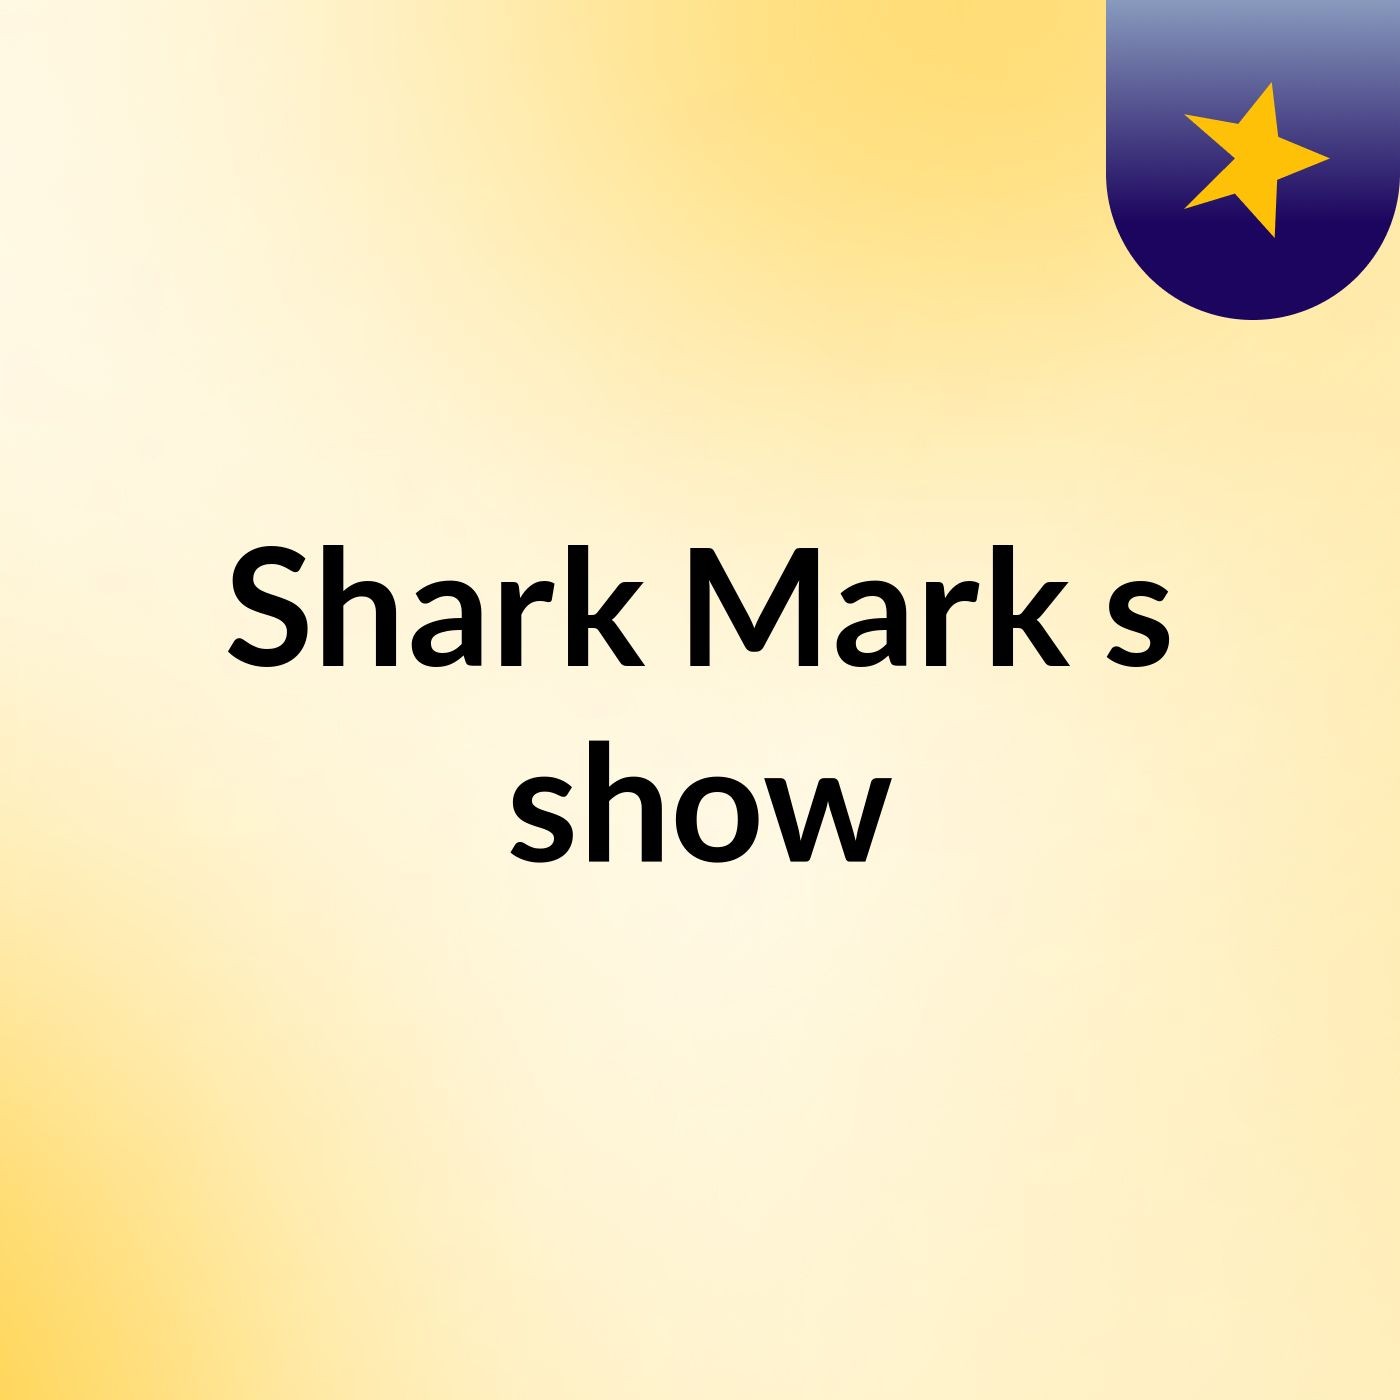 Episode 2 - Shark Mark's show